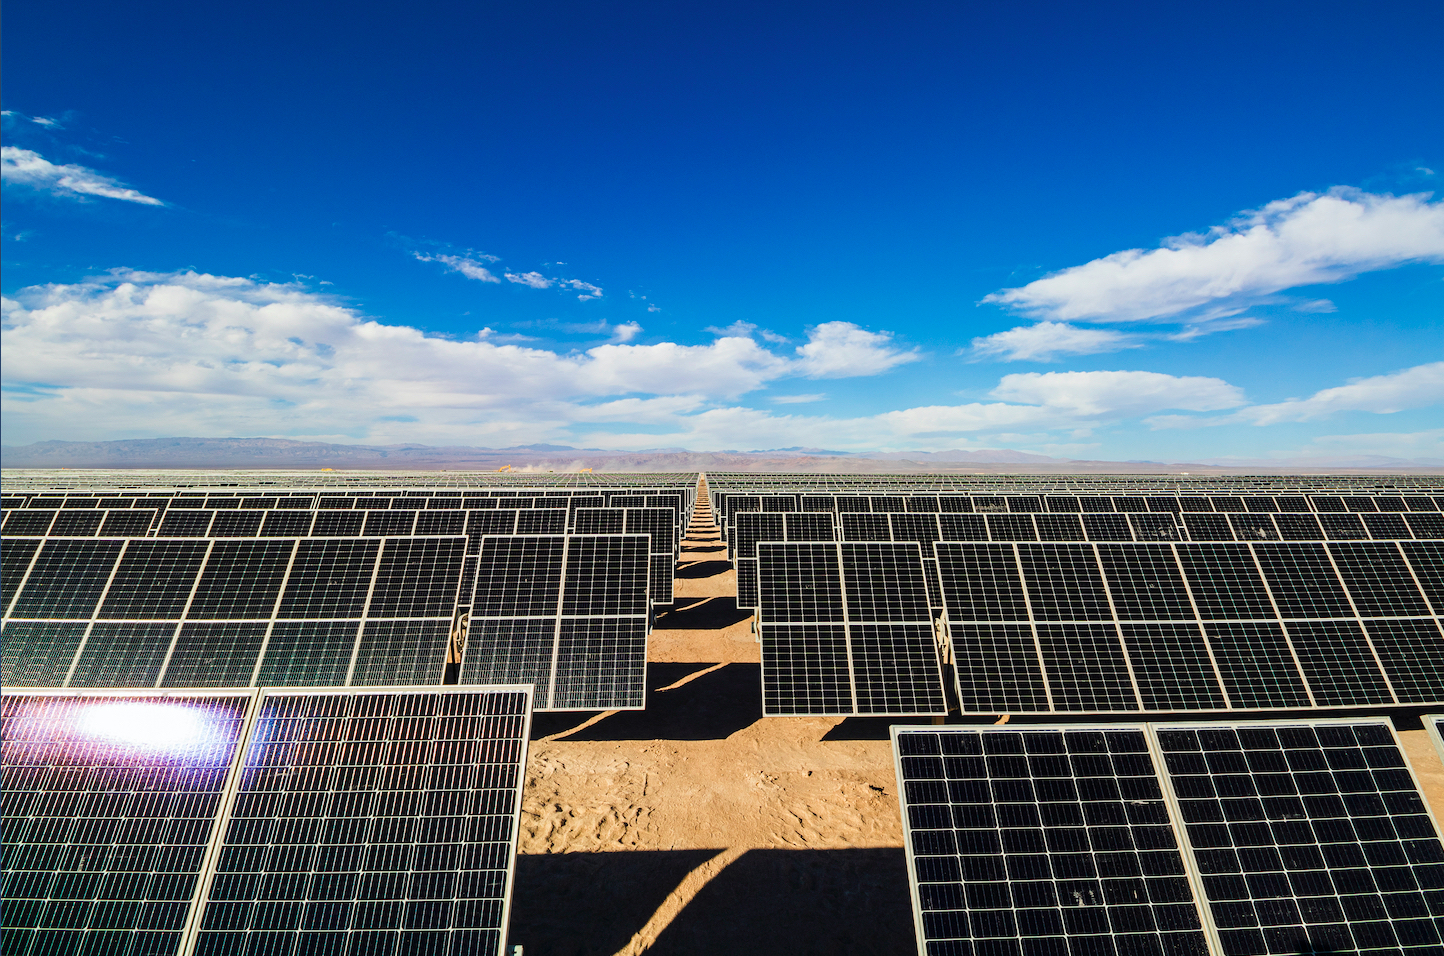 La generación solar fotovoltaica centralizada alcanza los 6 GW en Brasil